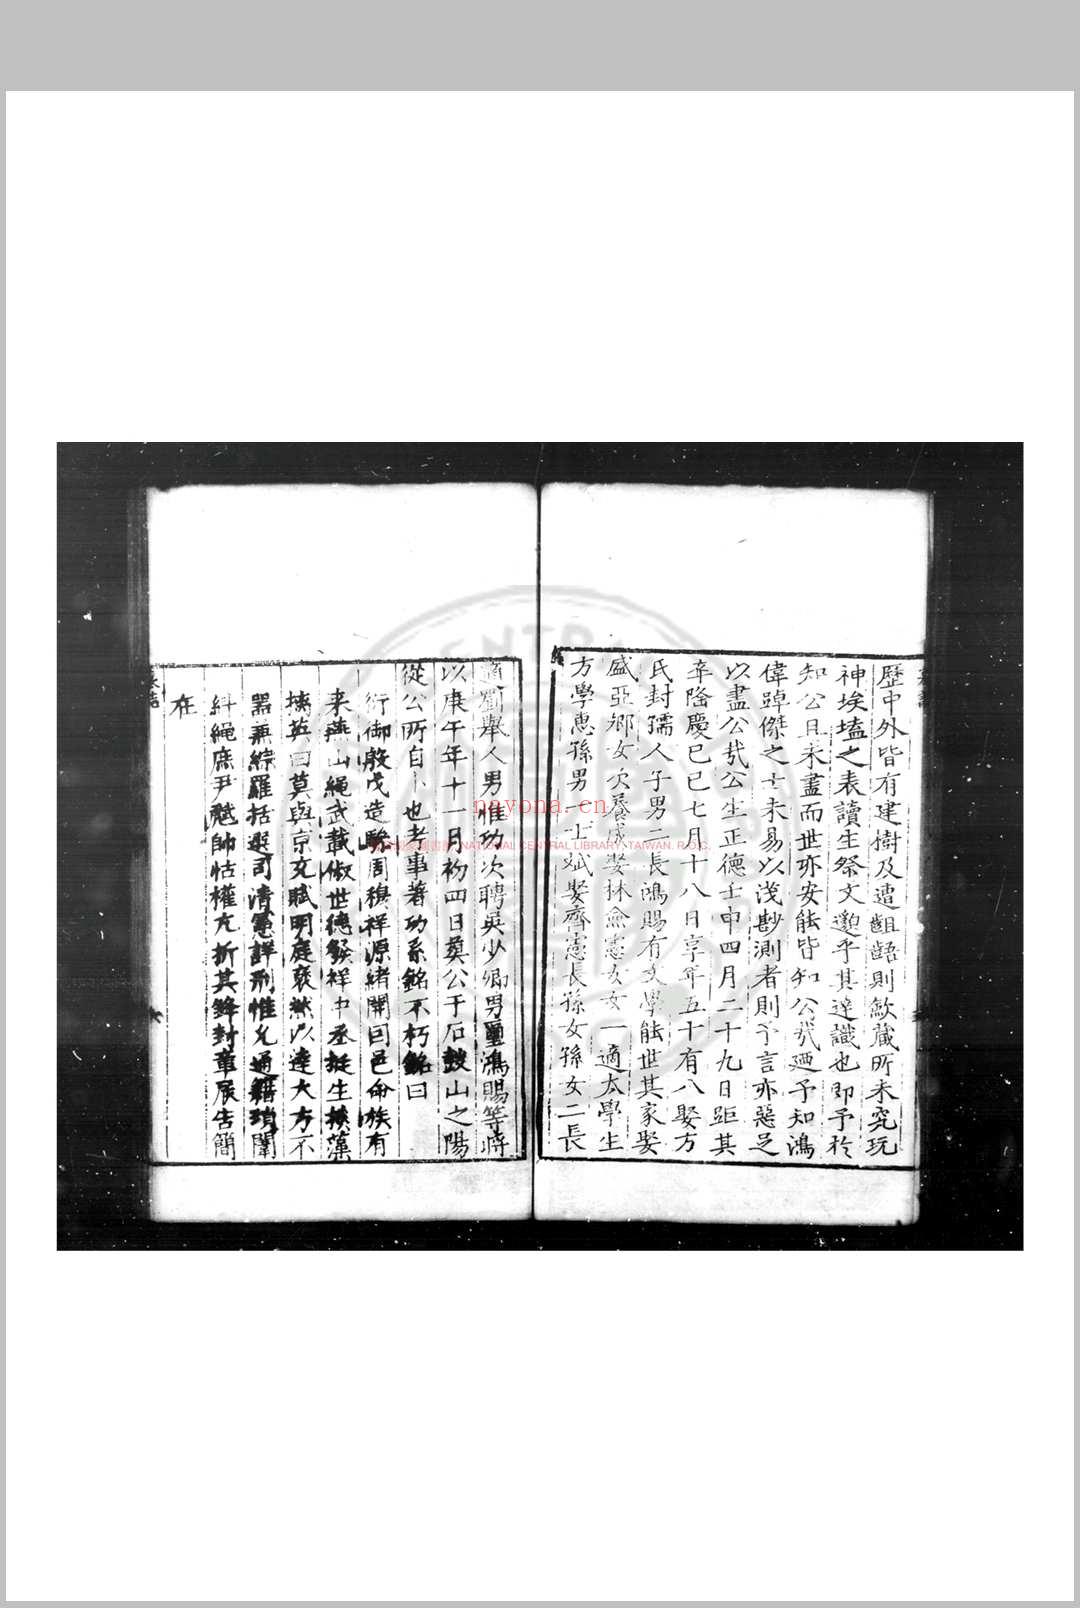 无闻堂稿 (明)赵釴撰 明隆庆六年(1572)桐城赵氏玄对楼刊本